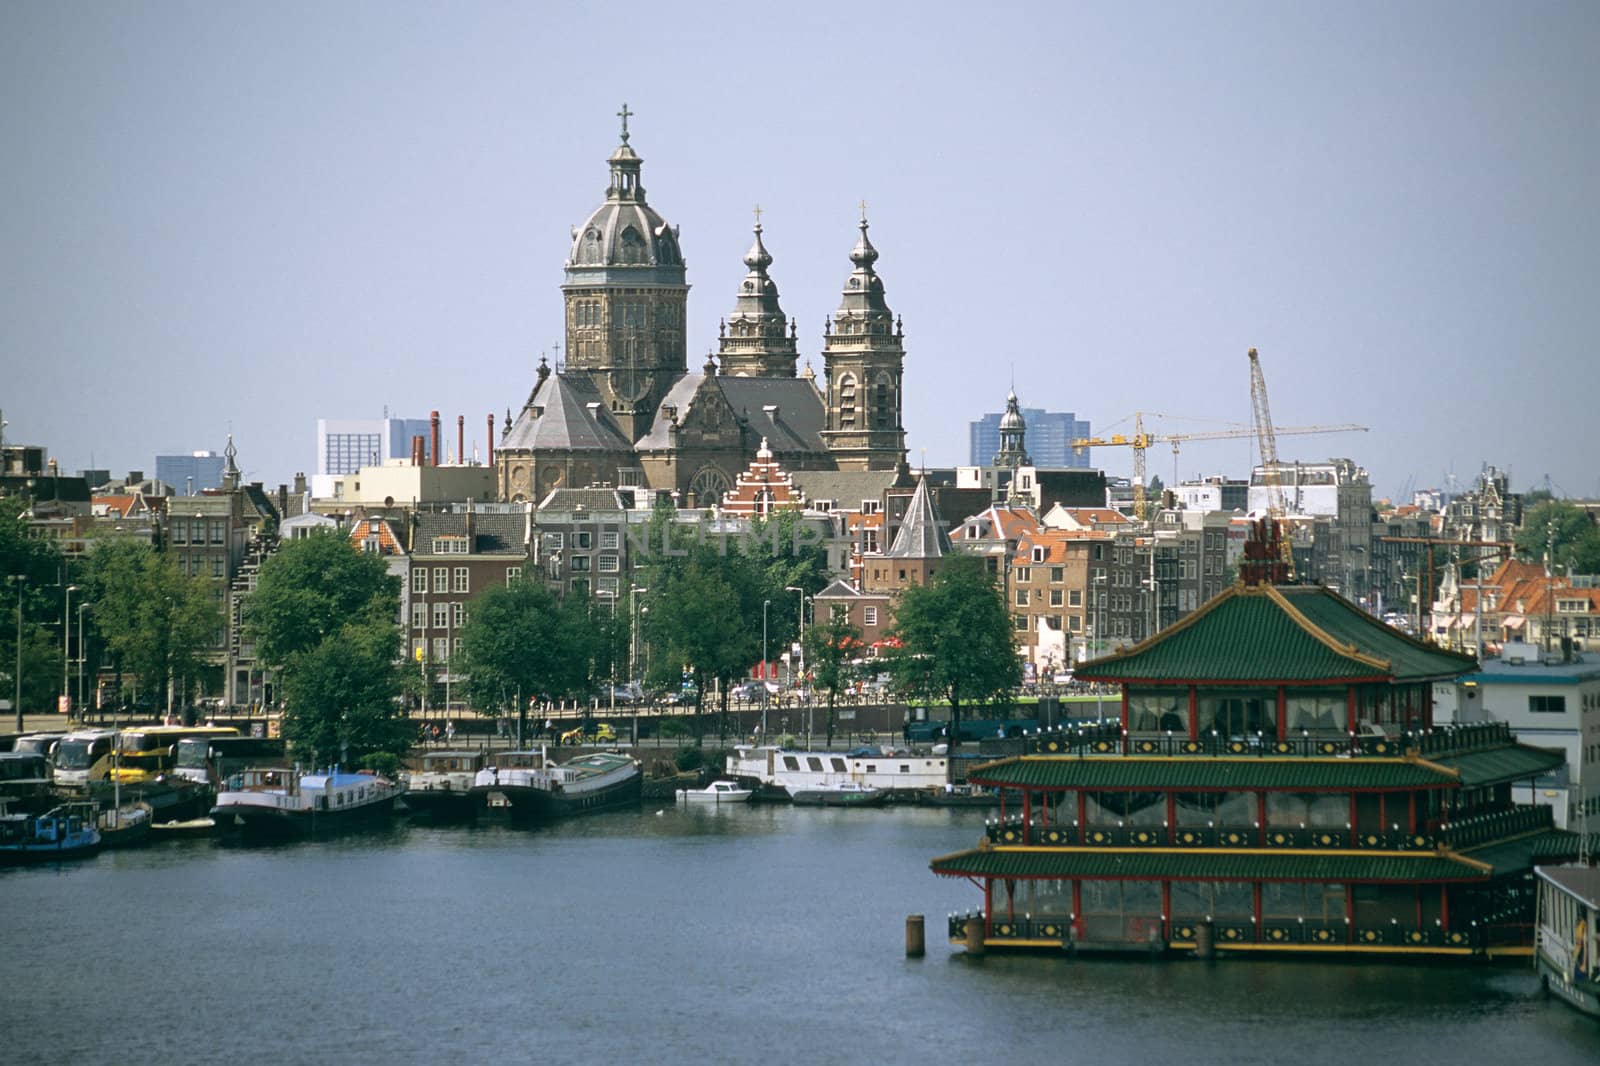 Sint Nicolaaskerk, Amsterdam by ACMPhoto